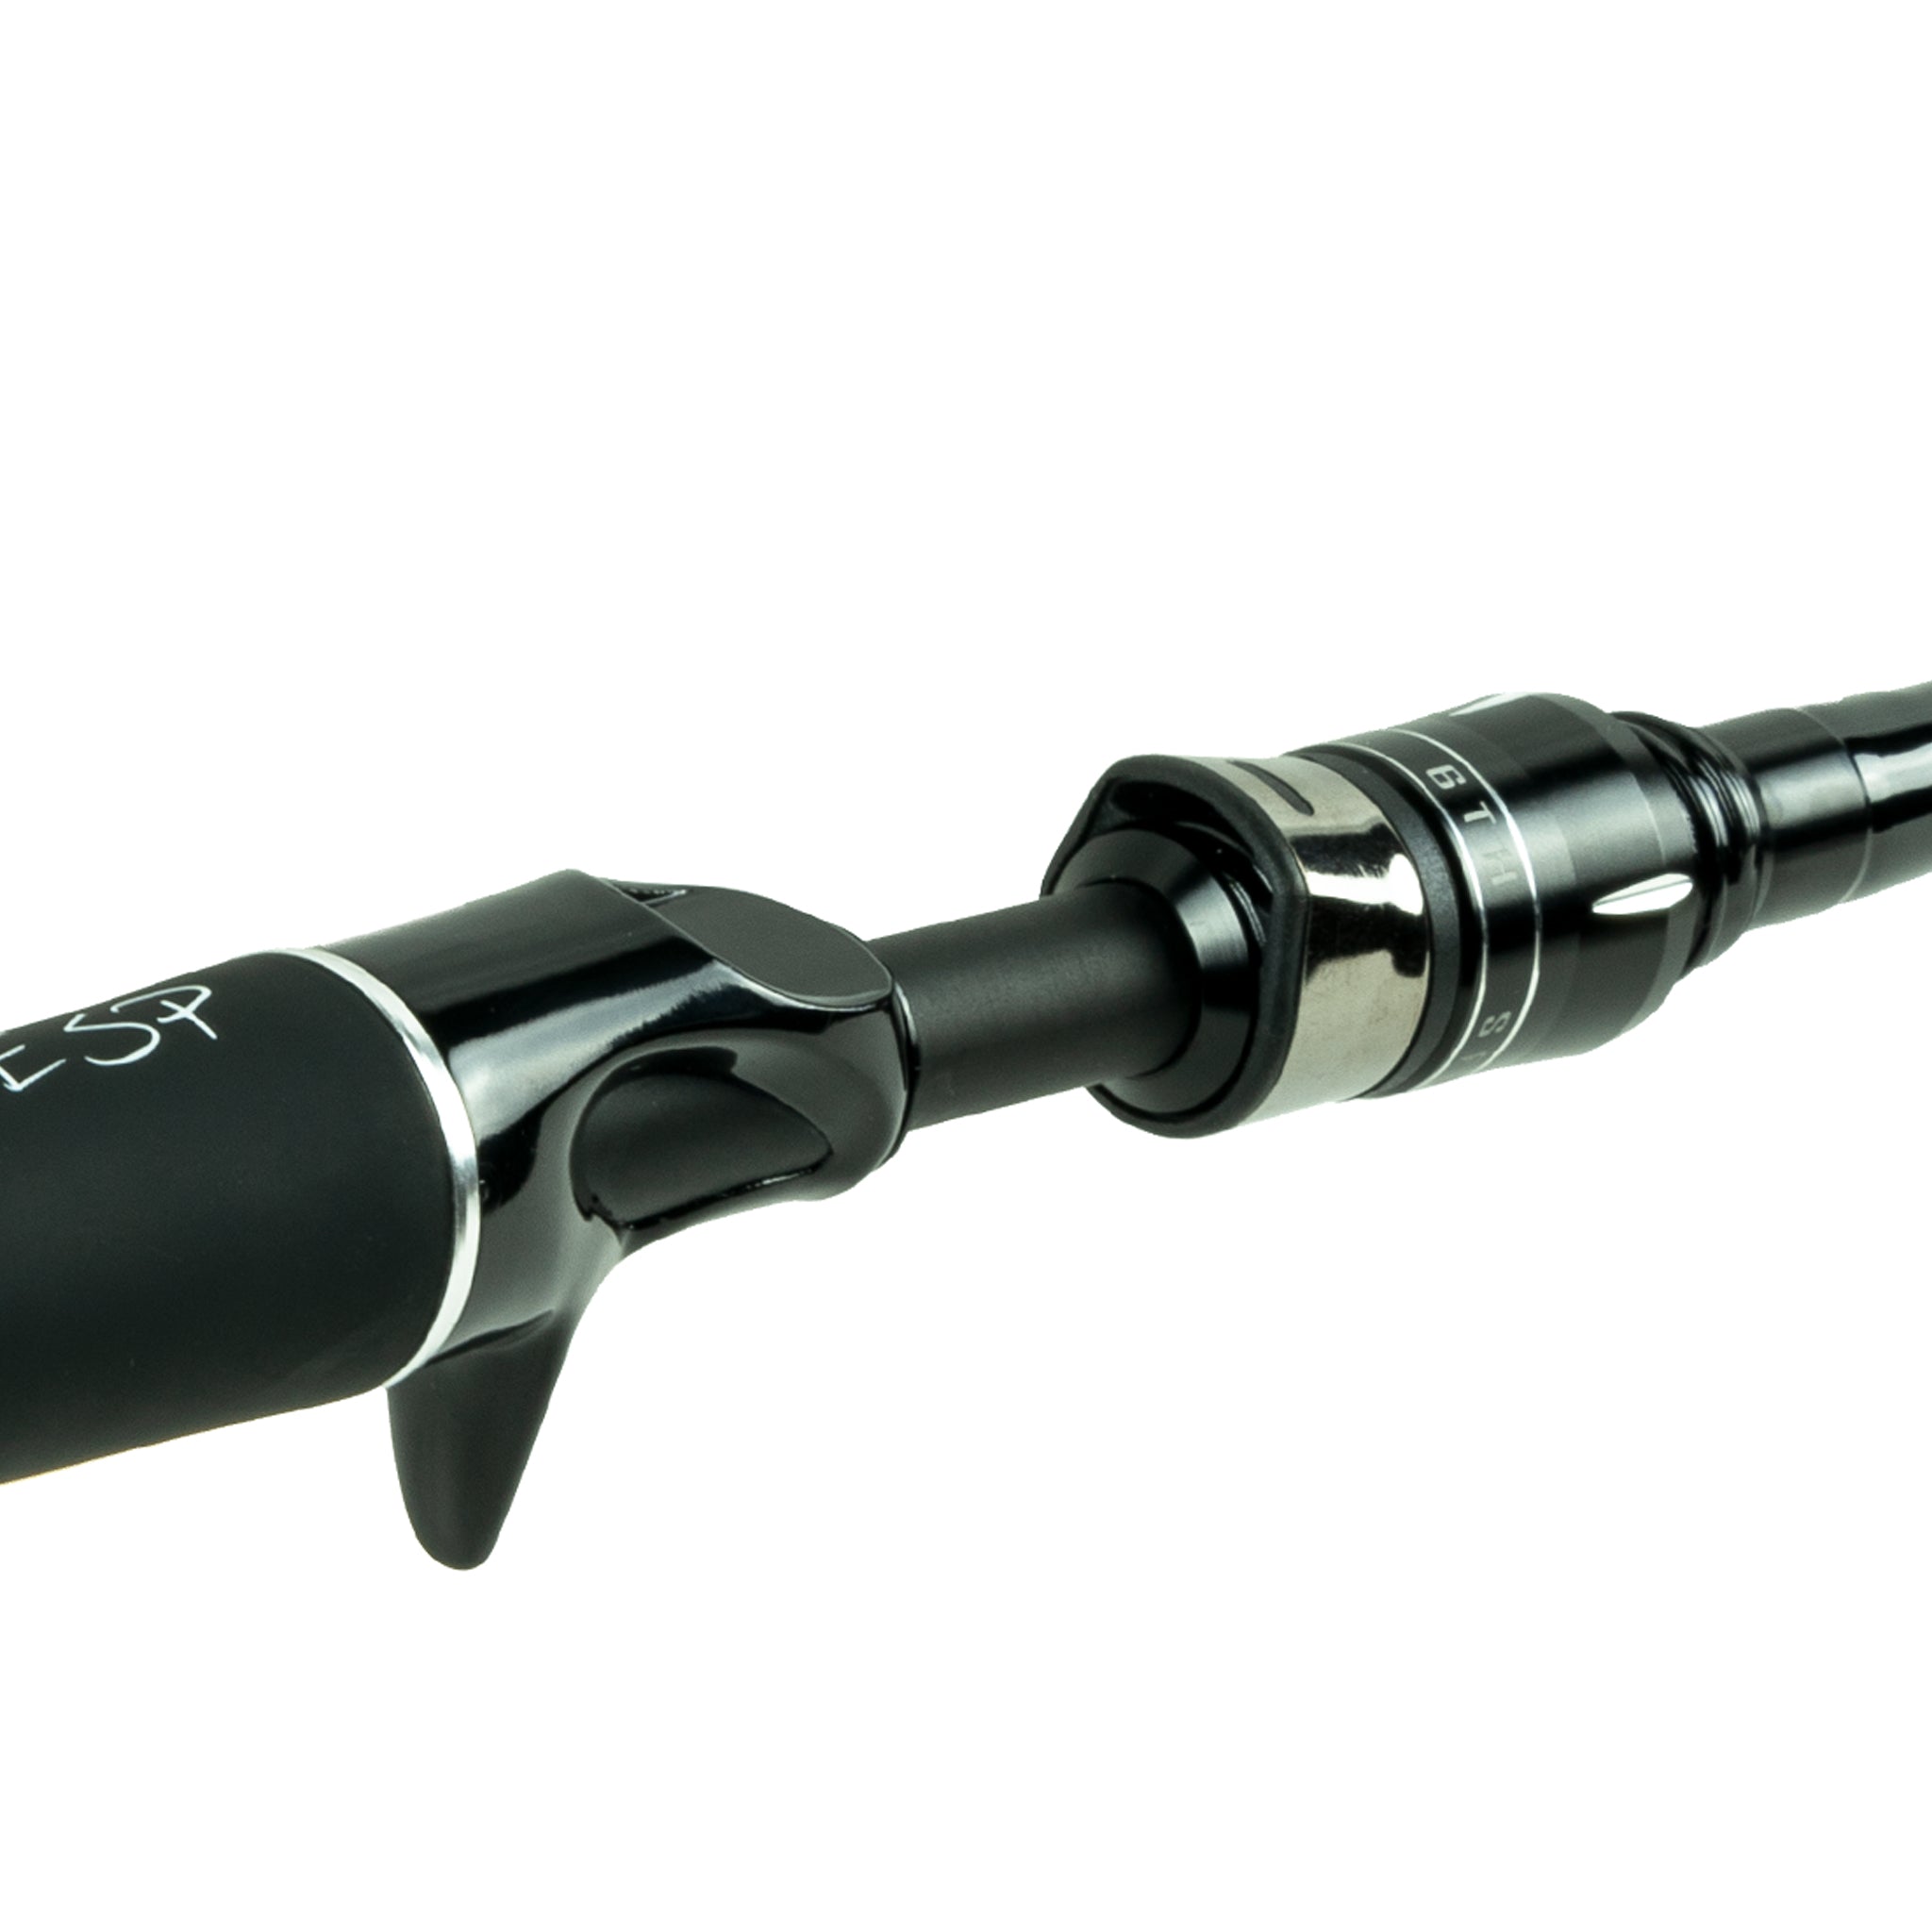 6th Sense Fishing ESP Rod, 6′ 10” Medium Fast : Review – Powered by Fishing